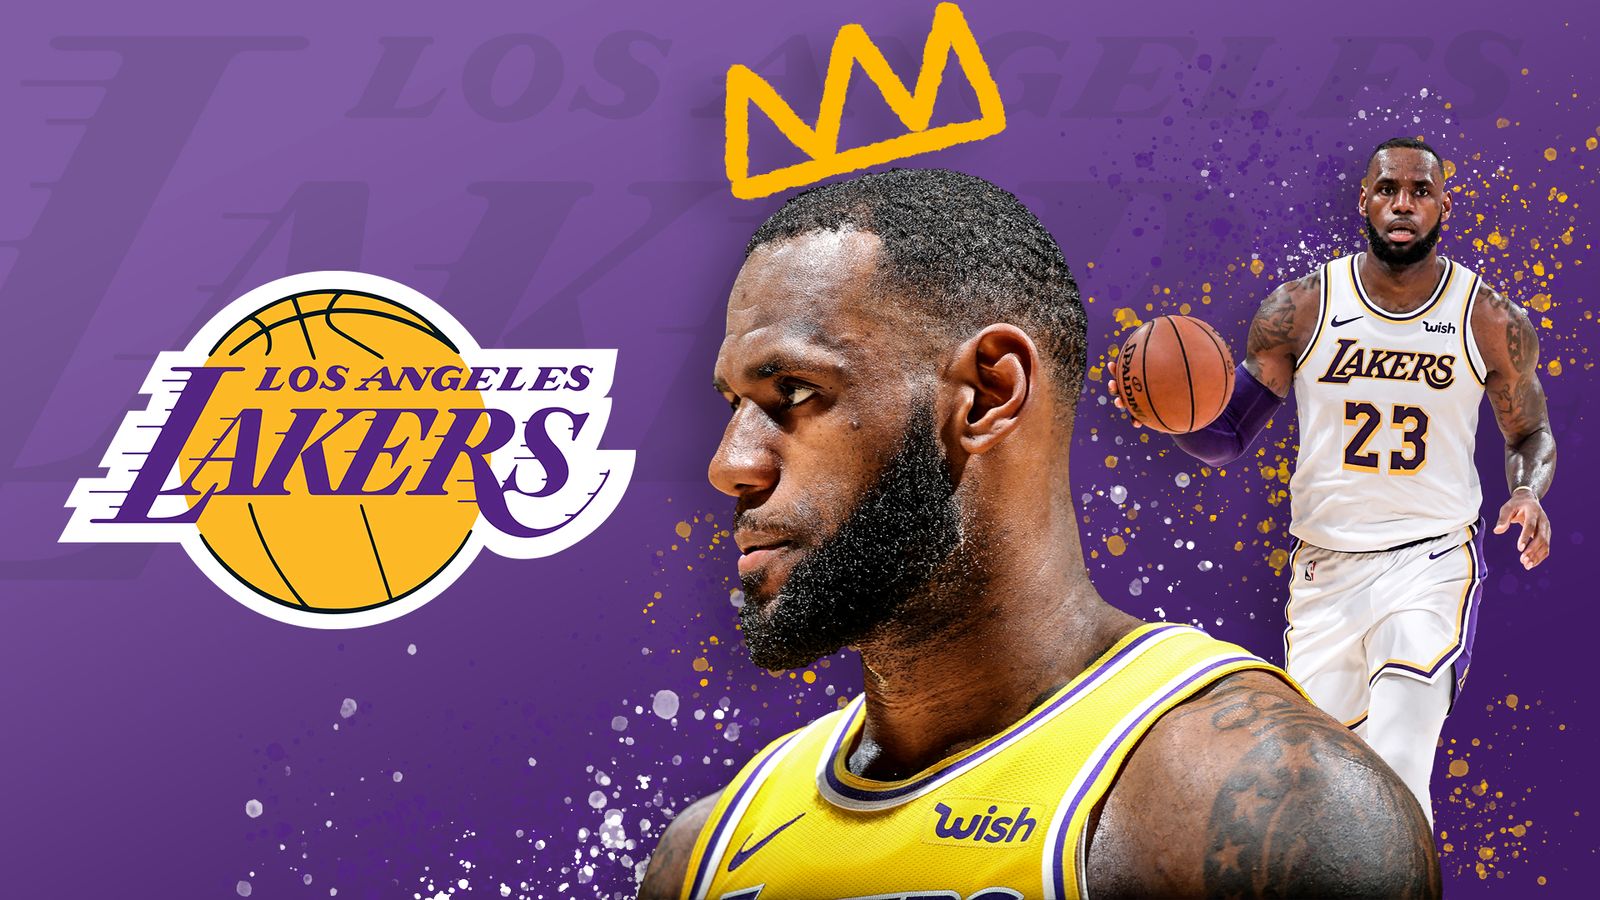 HD wallpaper: Basketball, LeBron James, Los Angeles Lakers, NBA